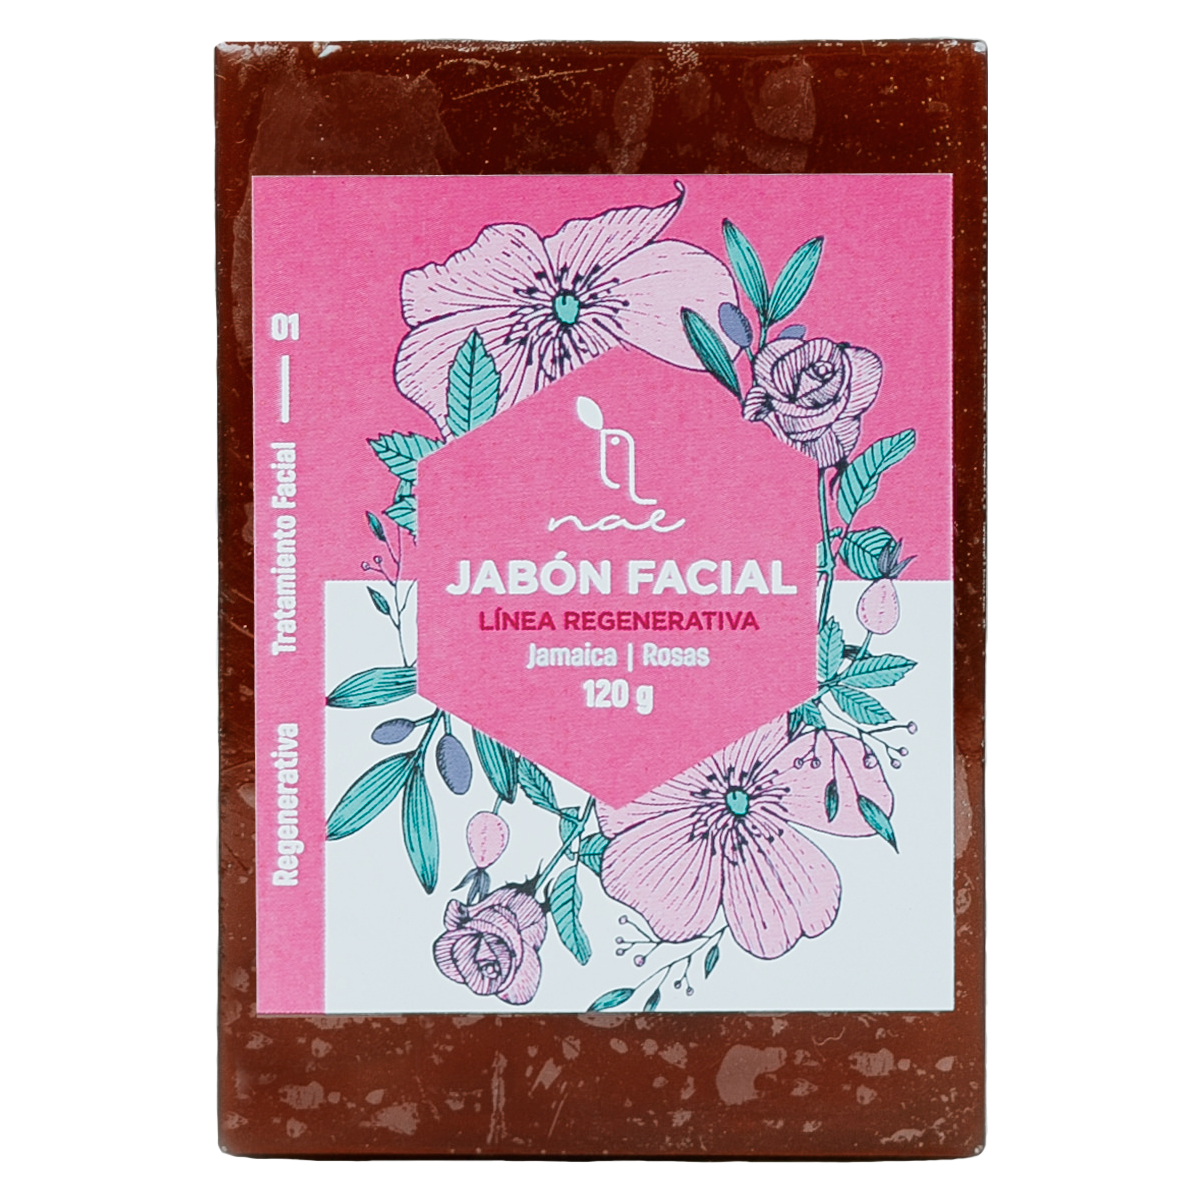 Jabón facial jamaica y rosas